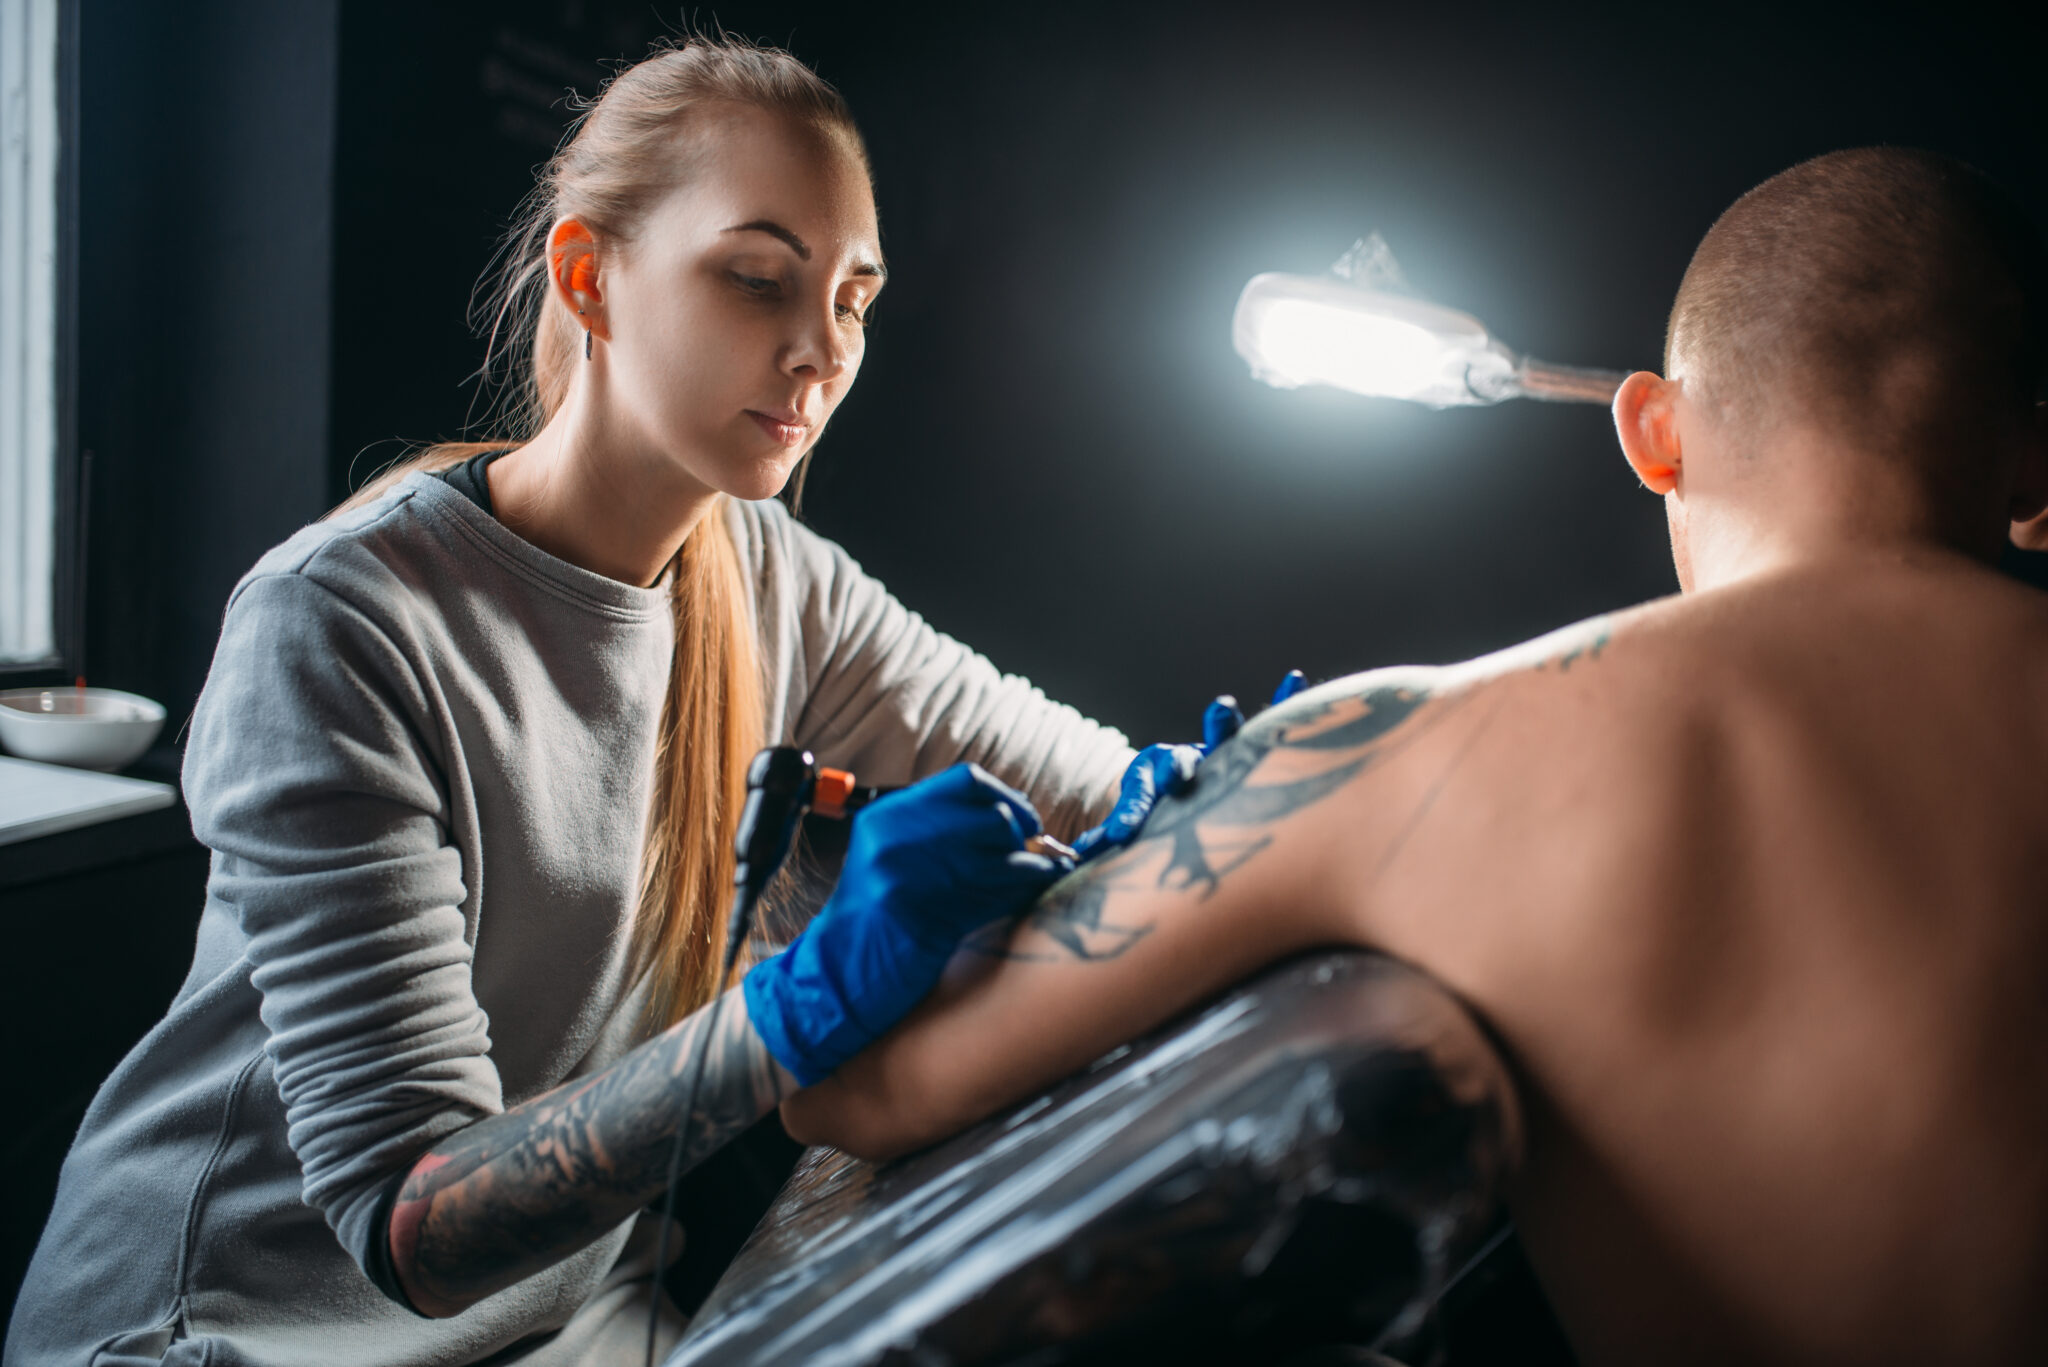 Tattoo Safety and Bloodborne Pathogen Training